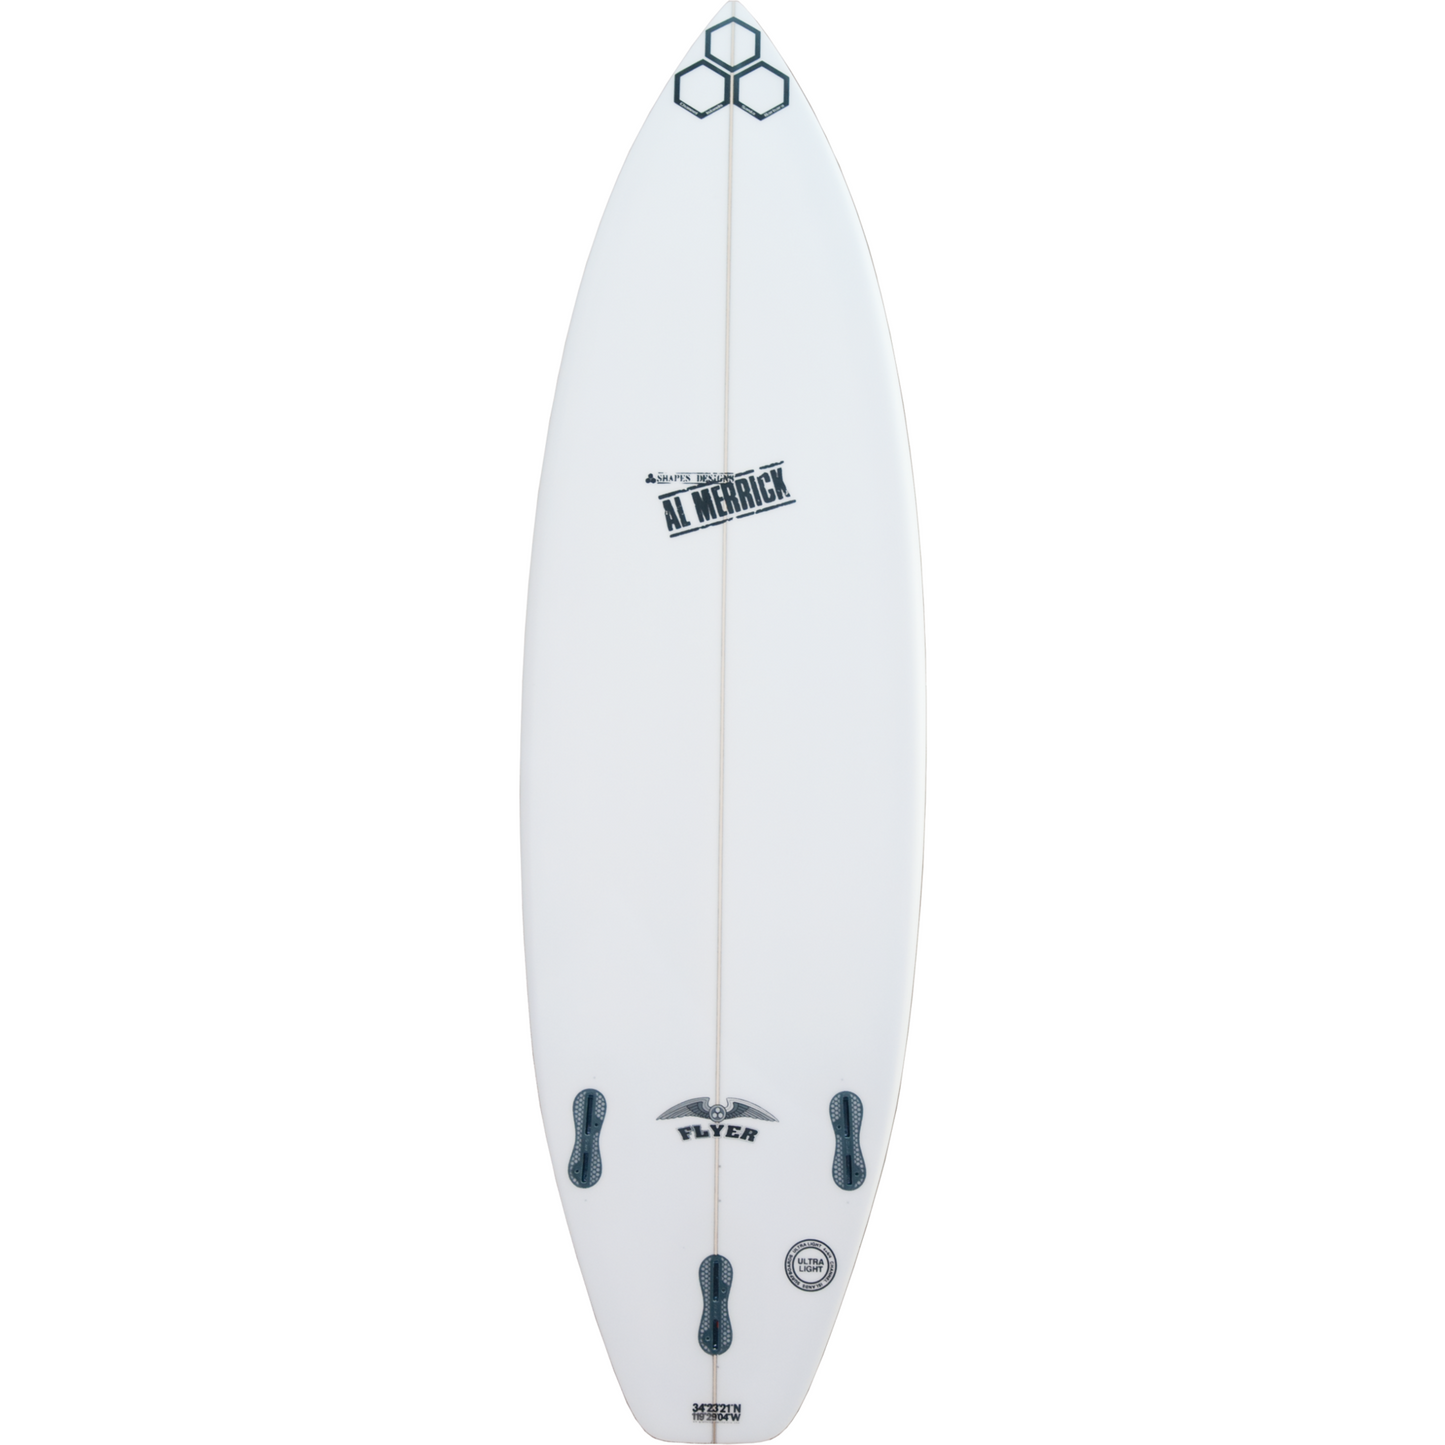 Channel Islands - OG Flyer Surfboard